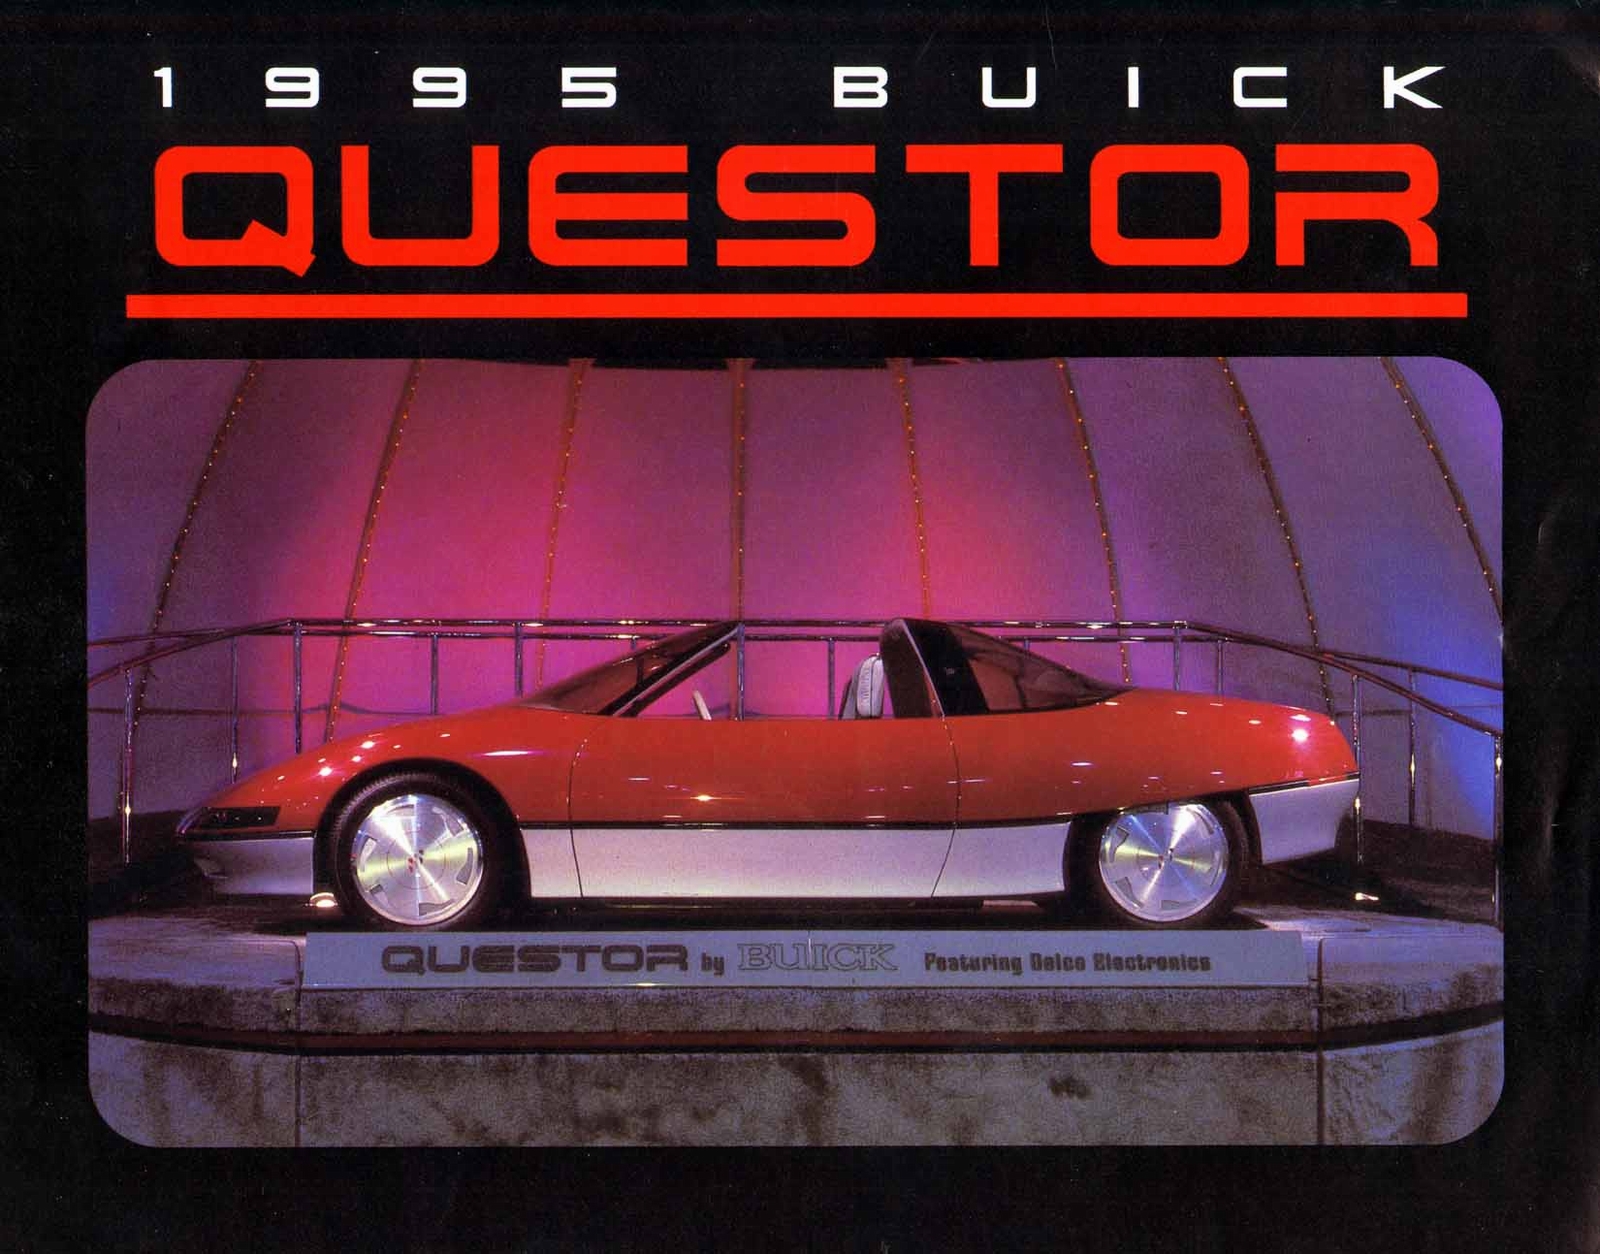 n_1983 -1995 Buick Questor-01.jpg